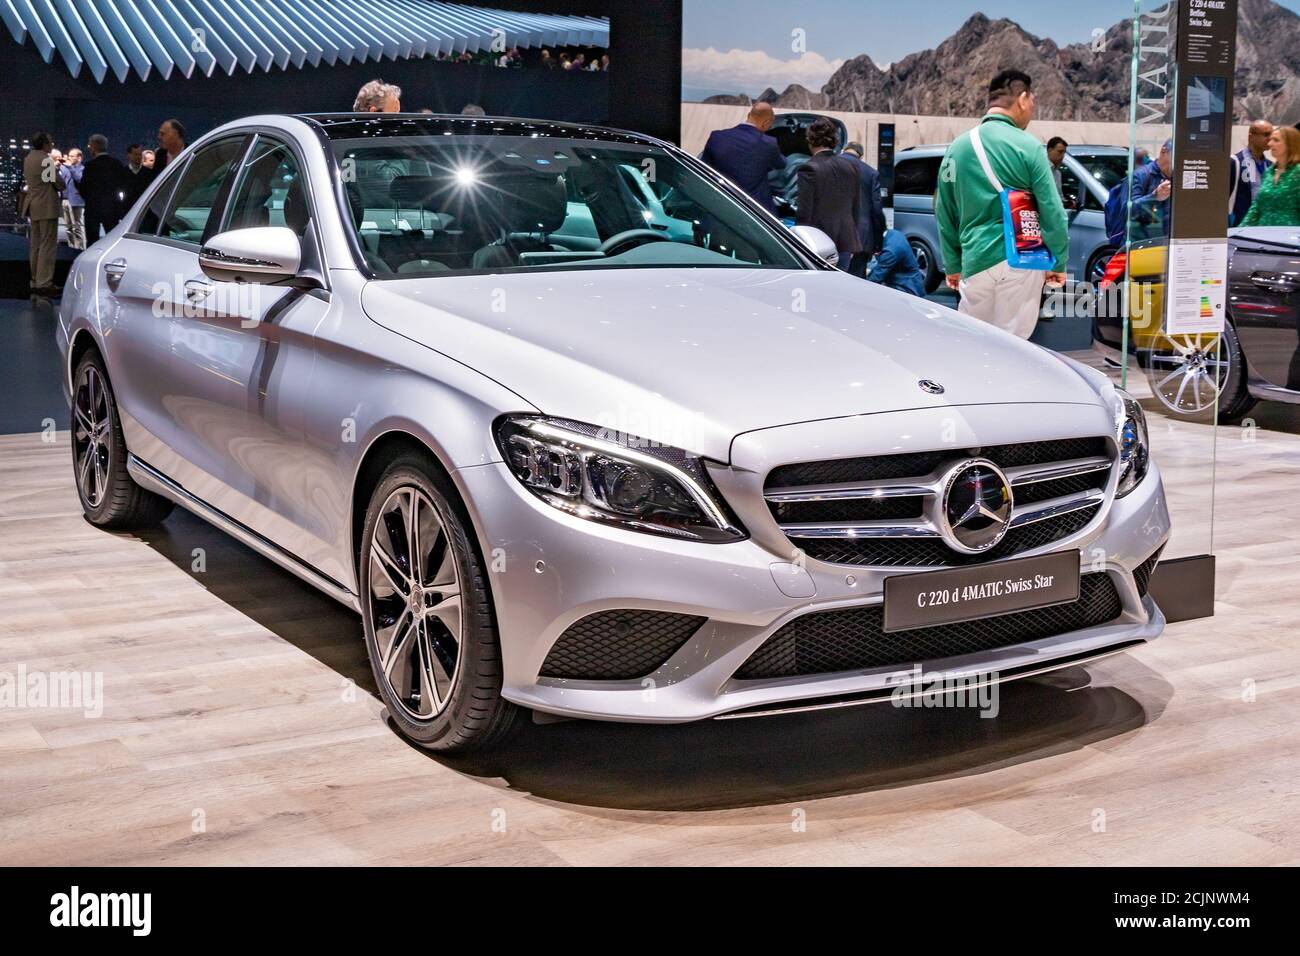 Mercedes c220 immagini e fotografie stock ad alta risoluzione - Alamy